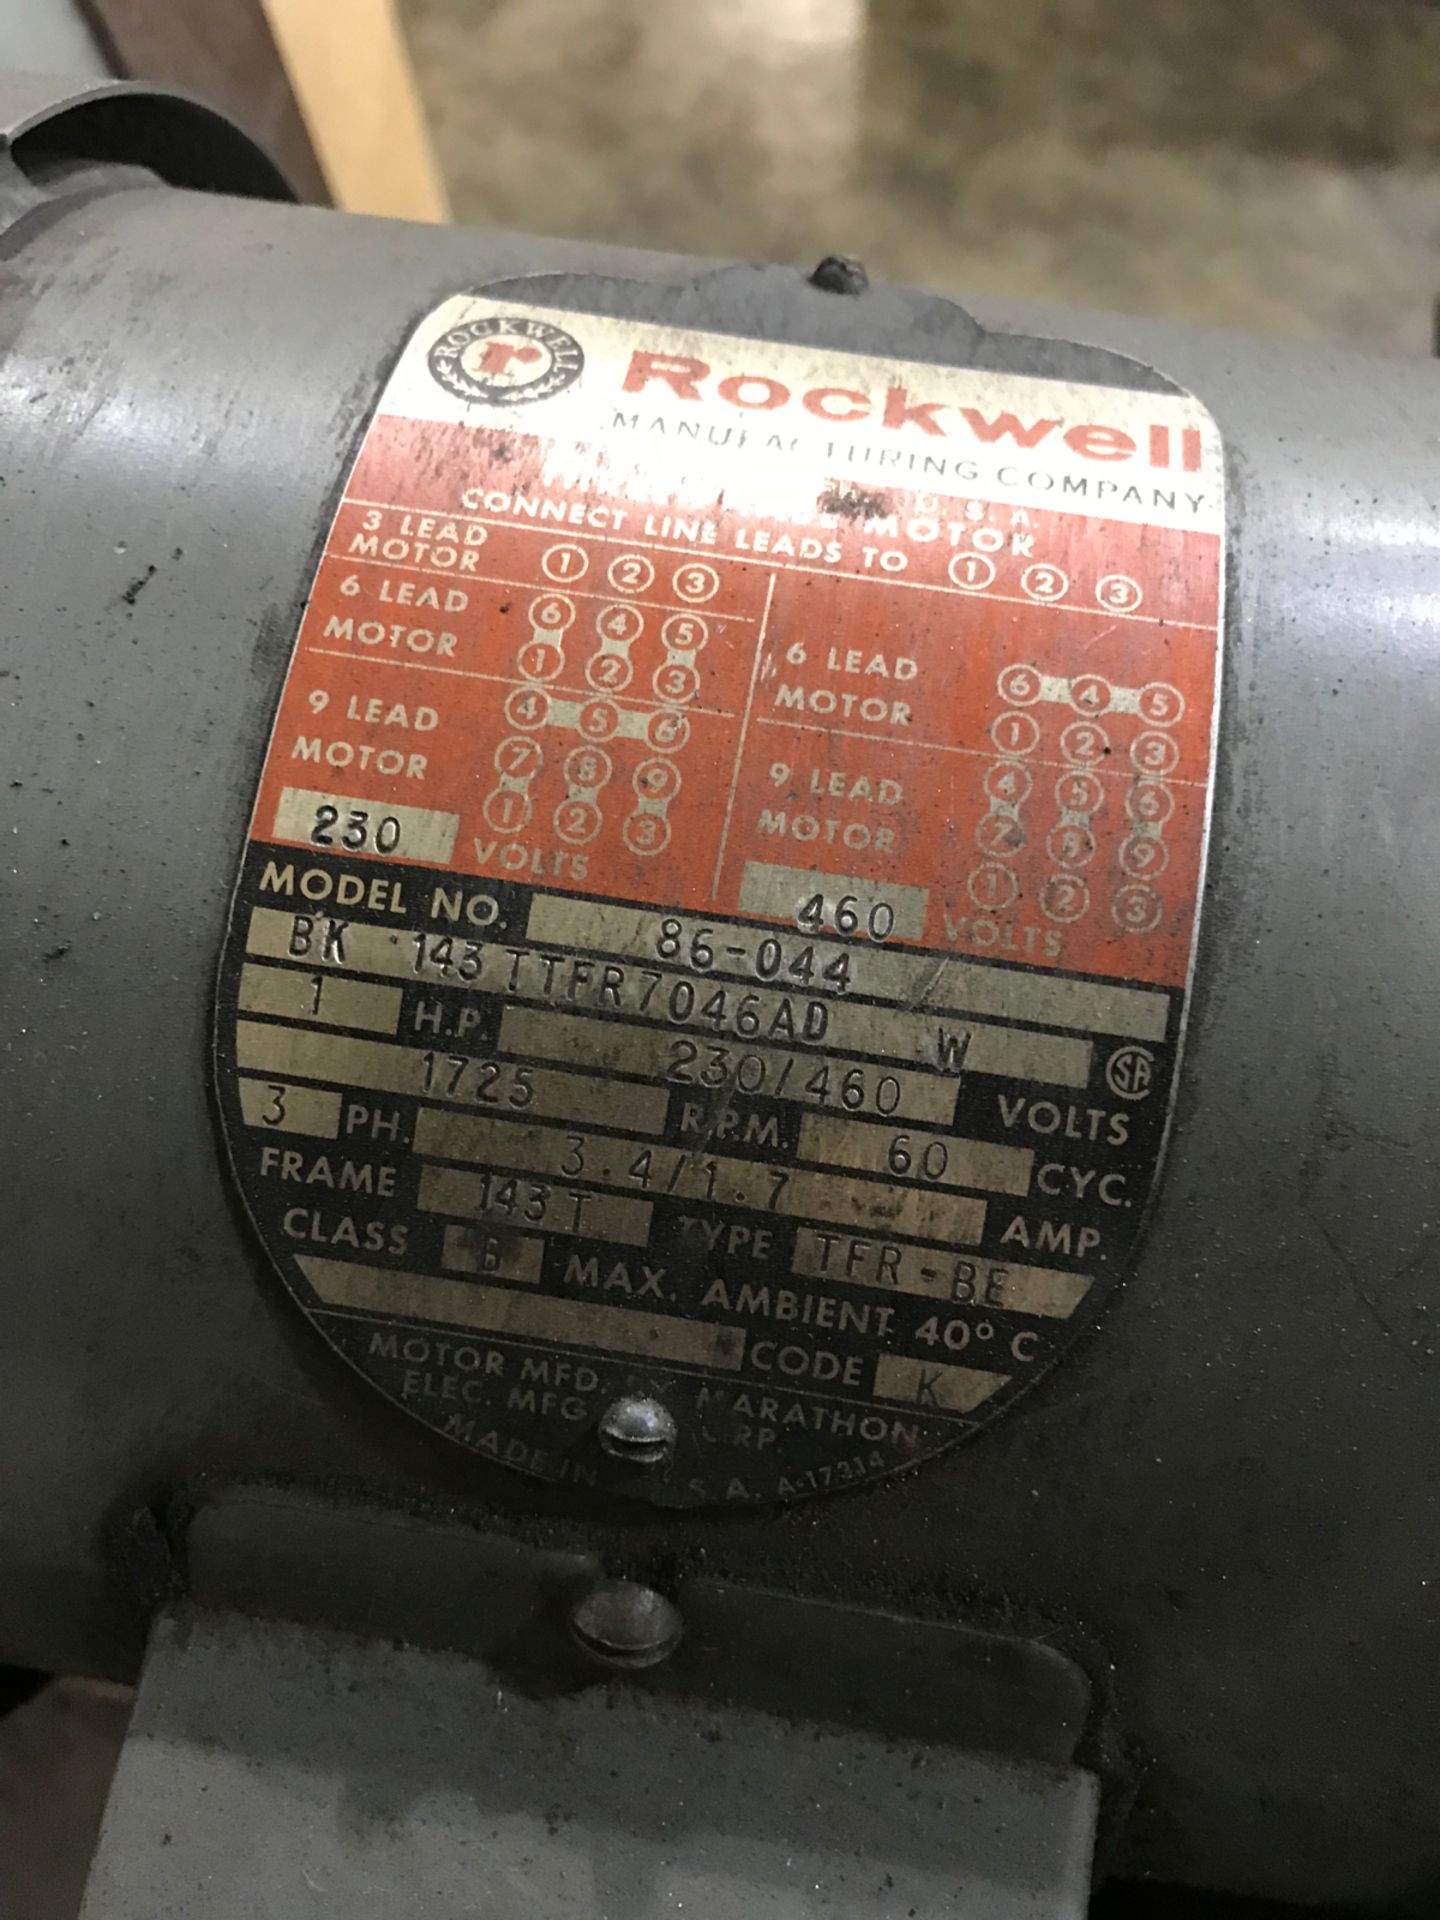 Rockwell Model # 86-044 disc sander - Image 3 of 3